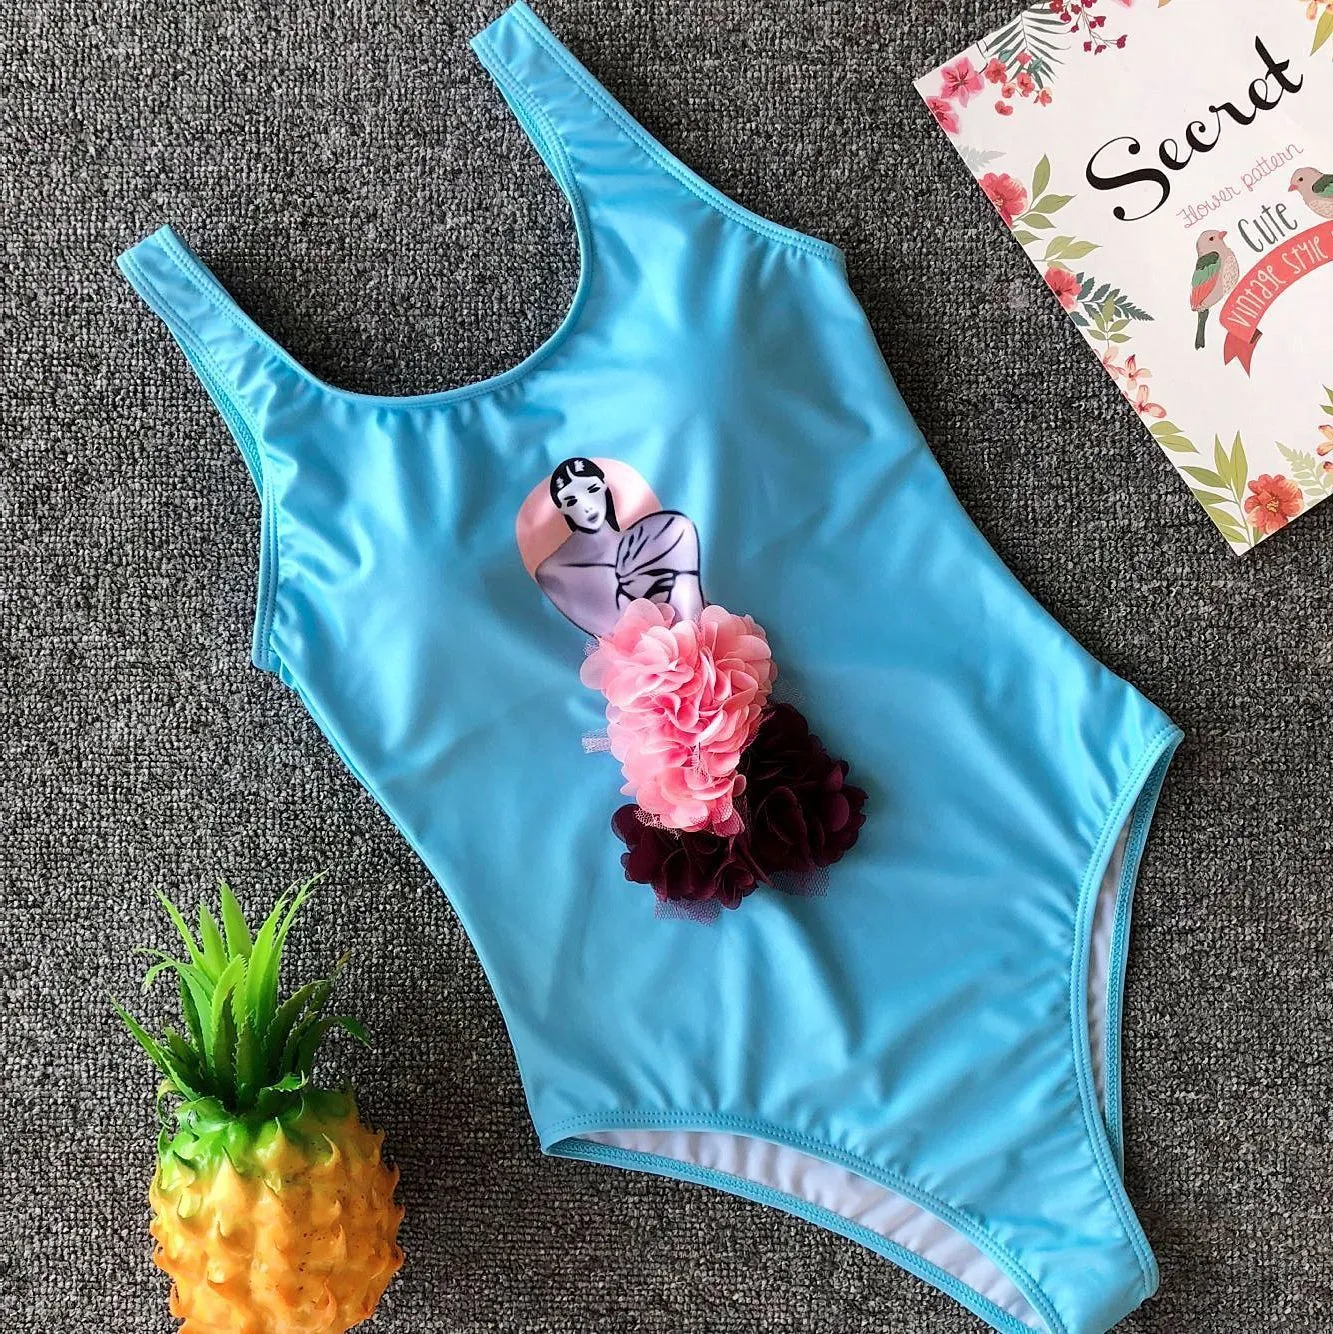 MJ117 2019 nouveau maillot de bain une pièce Sexy dessin animé imprimé maillot de bain femme plage dos nu Monokini maillot de bain femme 9499956